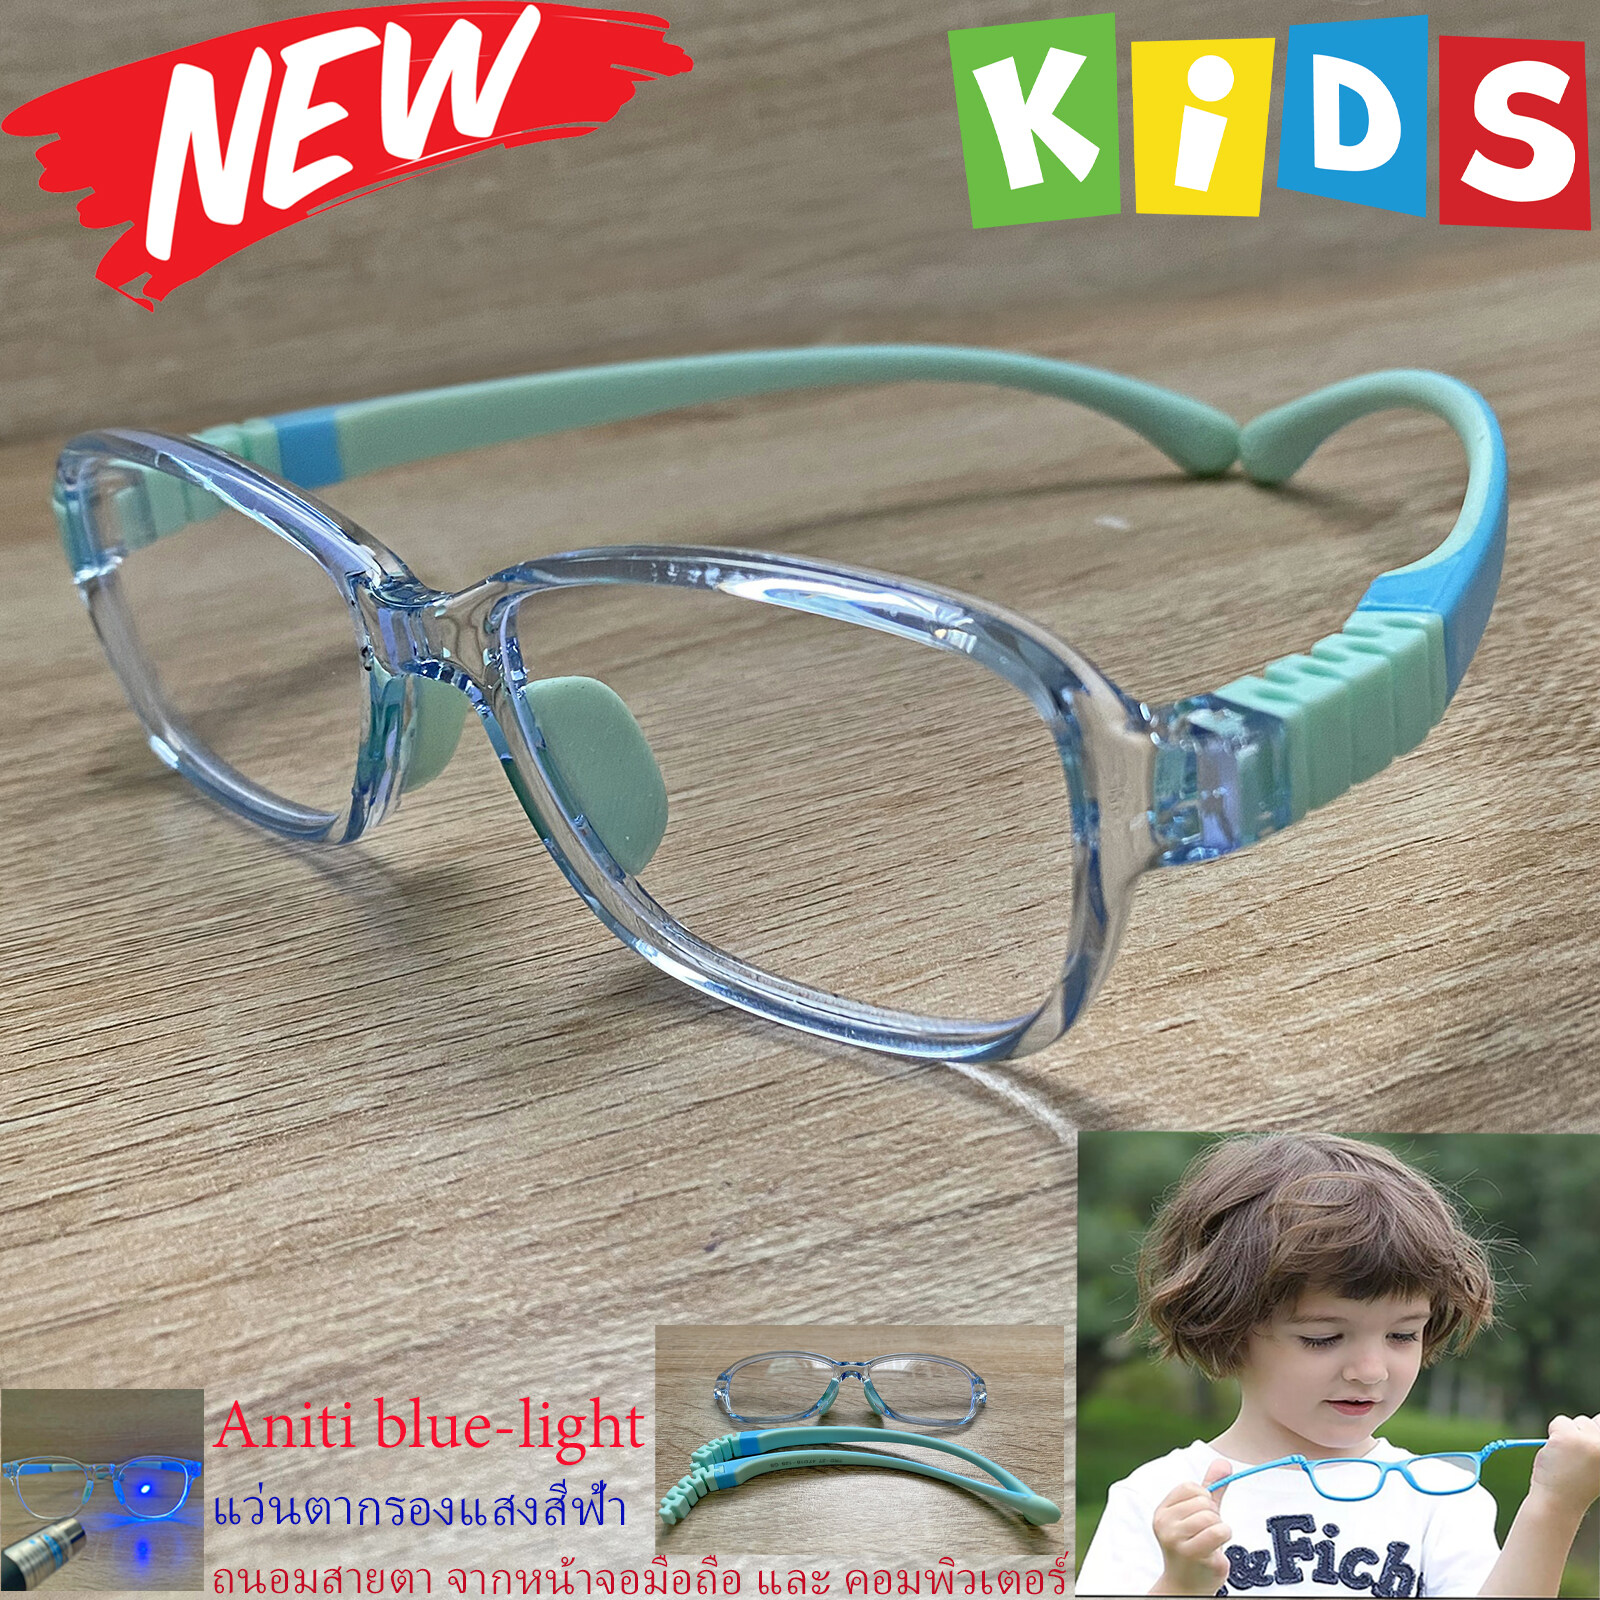 กรอบแว่นตาเด็ก กรองแสง สีฟ้า blue block แว่นเด็ก บลูบล็อค รุ่27 สีฟ้า ขาข้อต่อยืดหยุ่น ถอดขาเปลี่ยนได้ วัสดุTR90 เหมาะสำหรับเลนส์สายตา